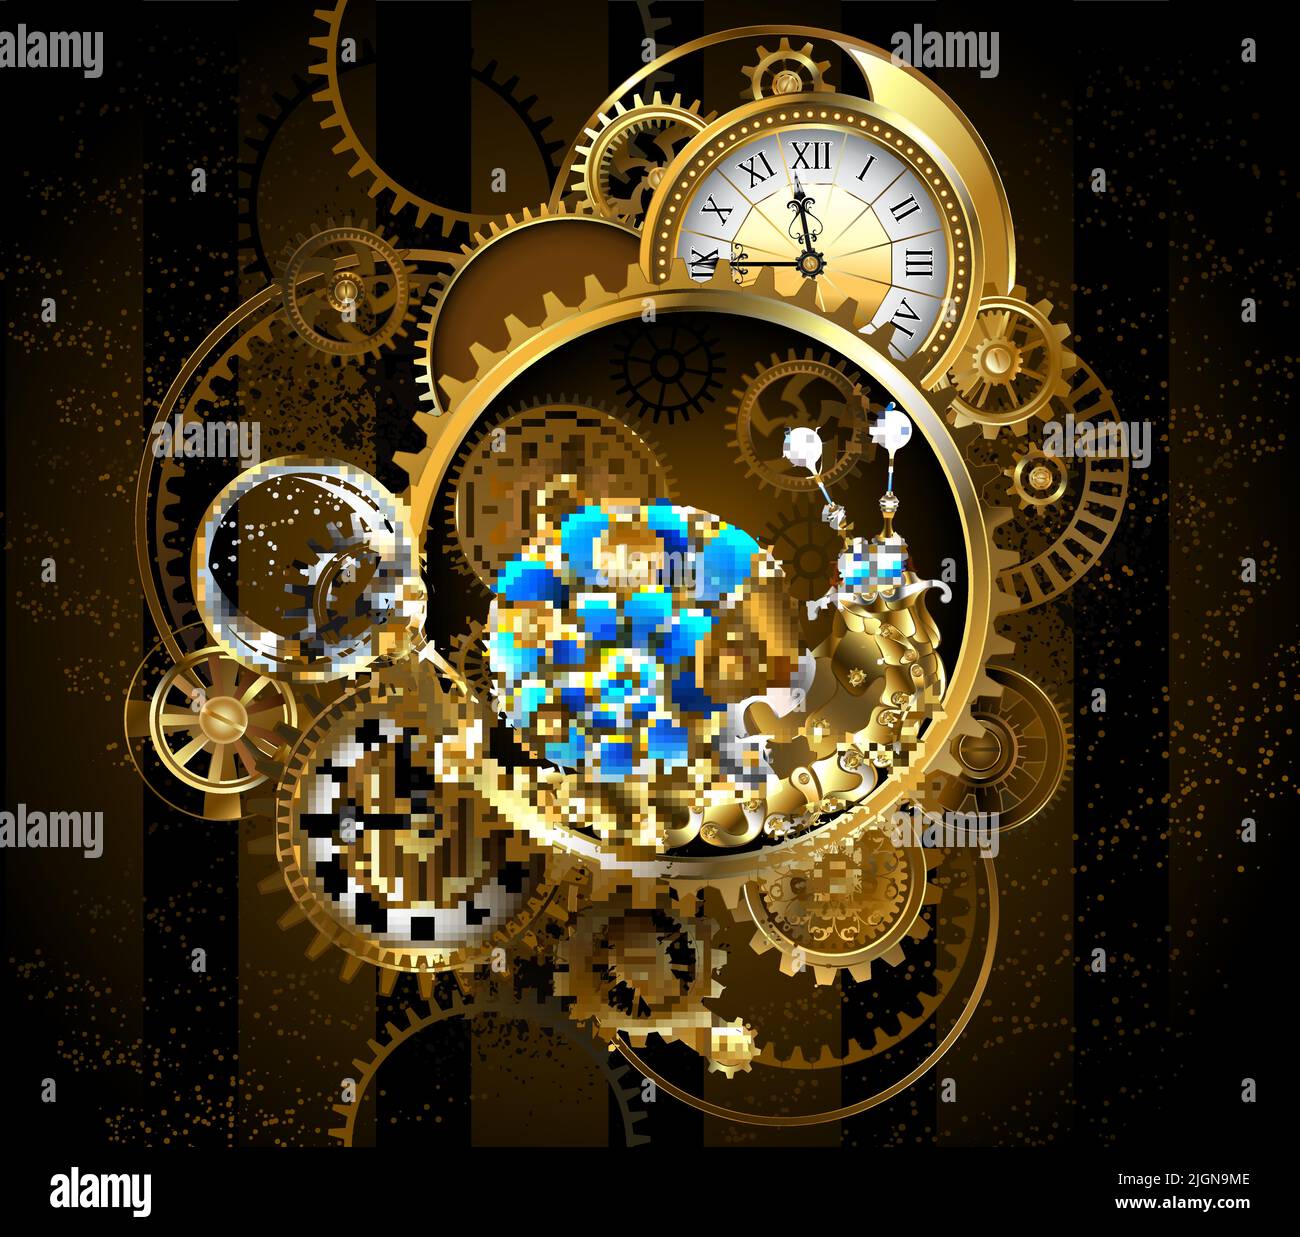 Horlogerie composée de cadrans anciens, engrenages en laiton et or, loupe, ralentie par un escargot mécanique avec coquille de verre bleue. Style steampunk. Illustration de Vecteur